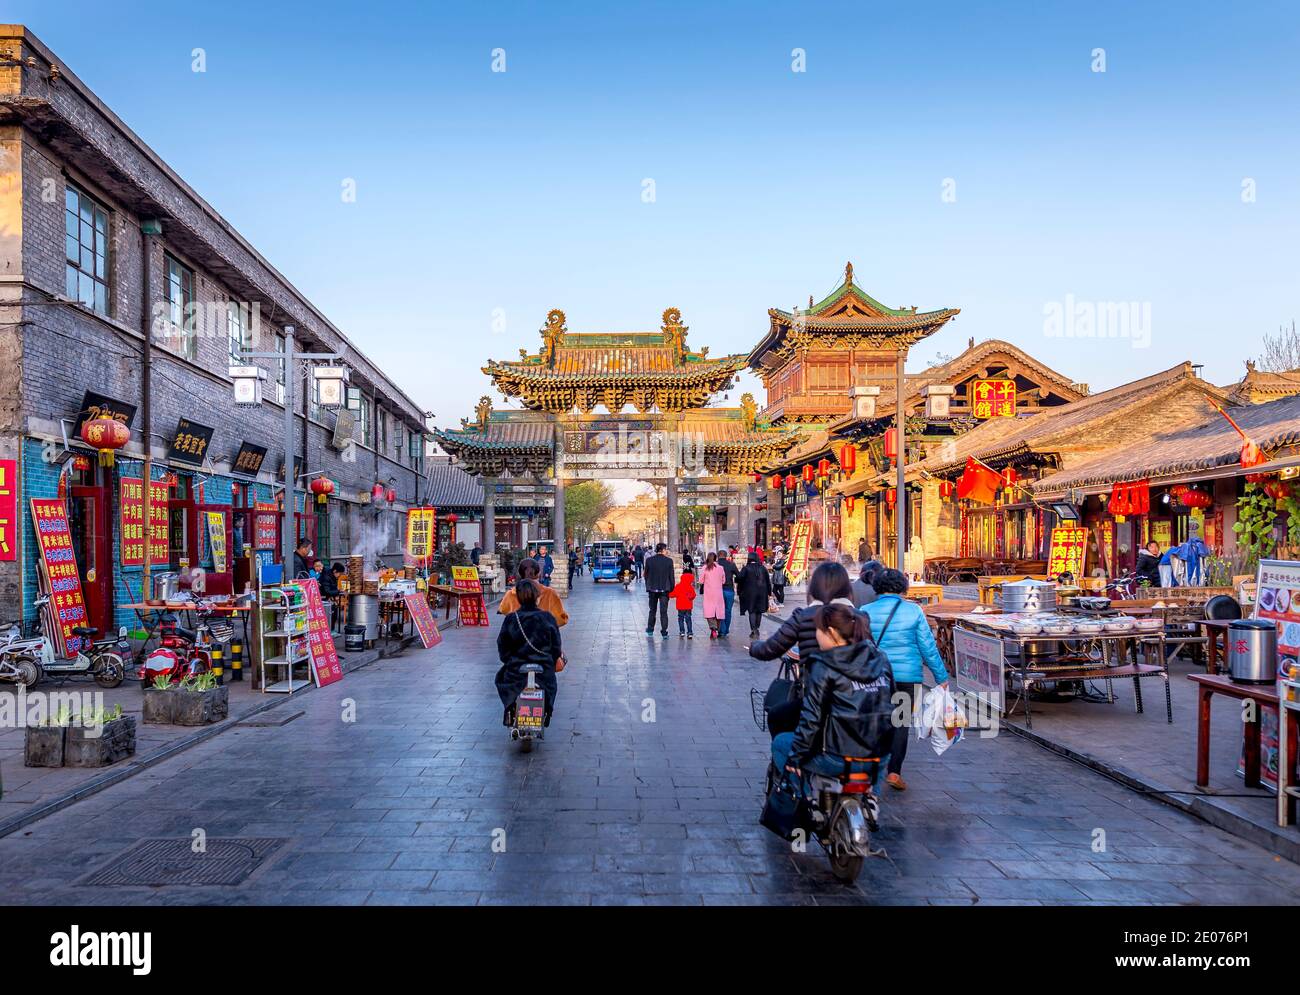 Sreet scene in Pingyao anciet city, China Stock Photo